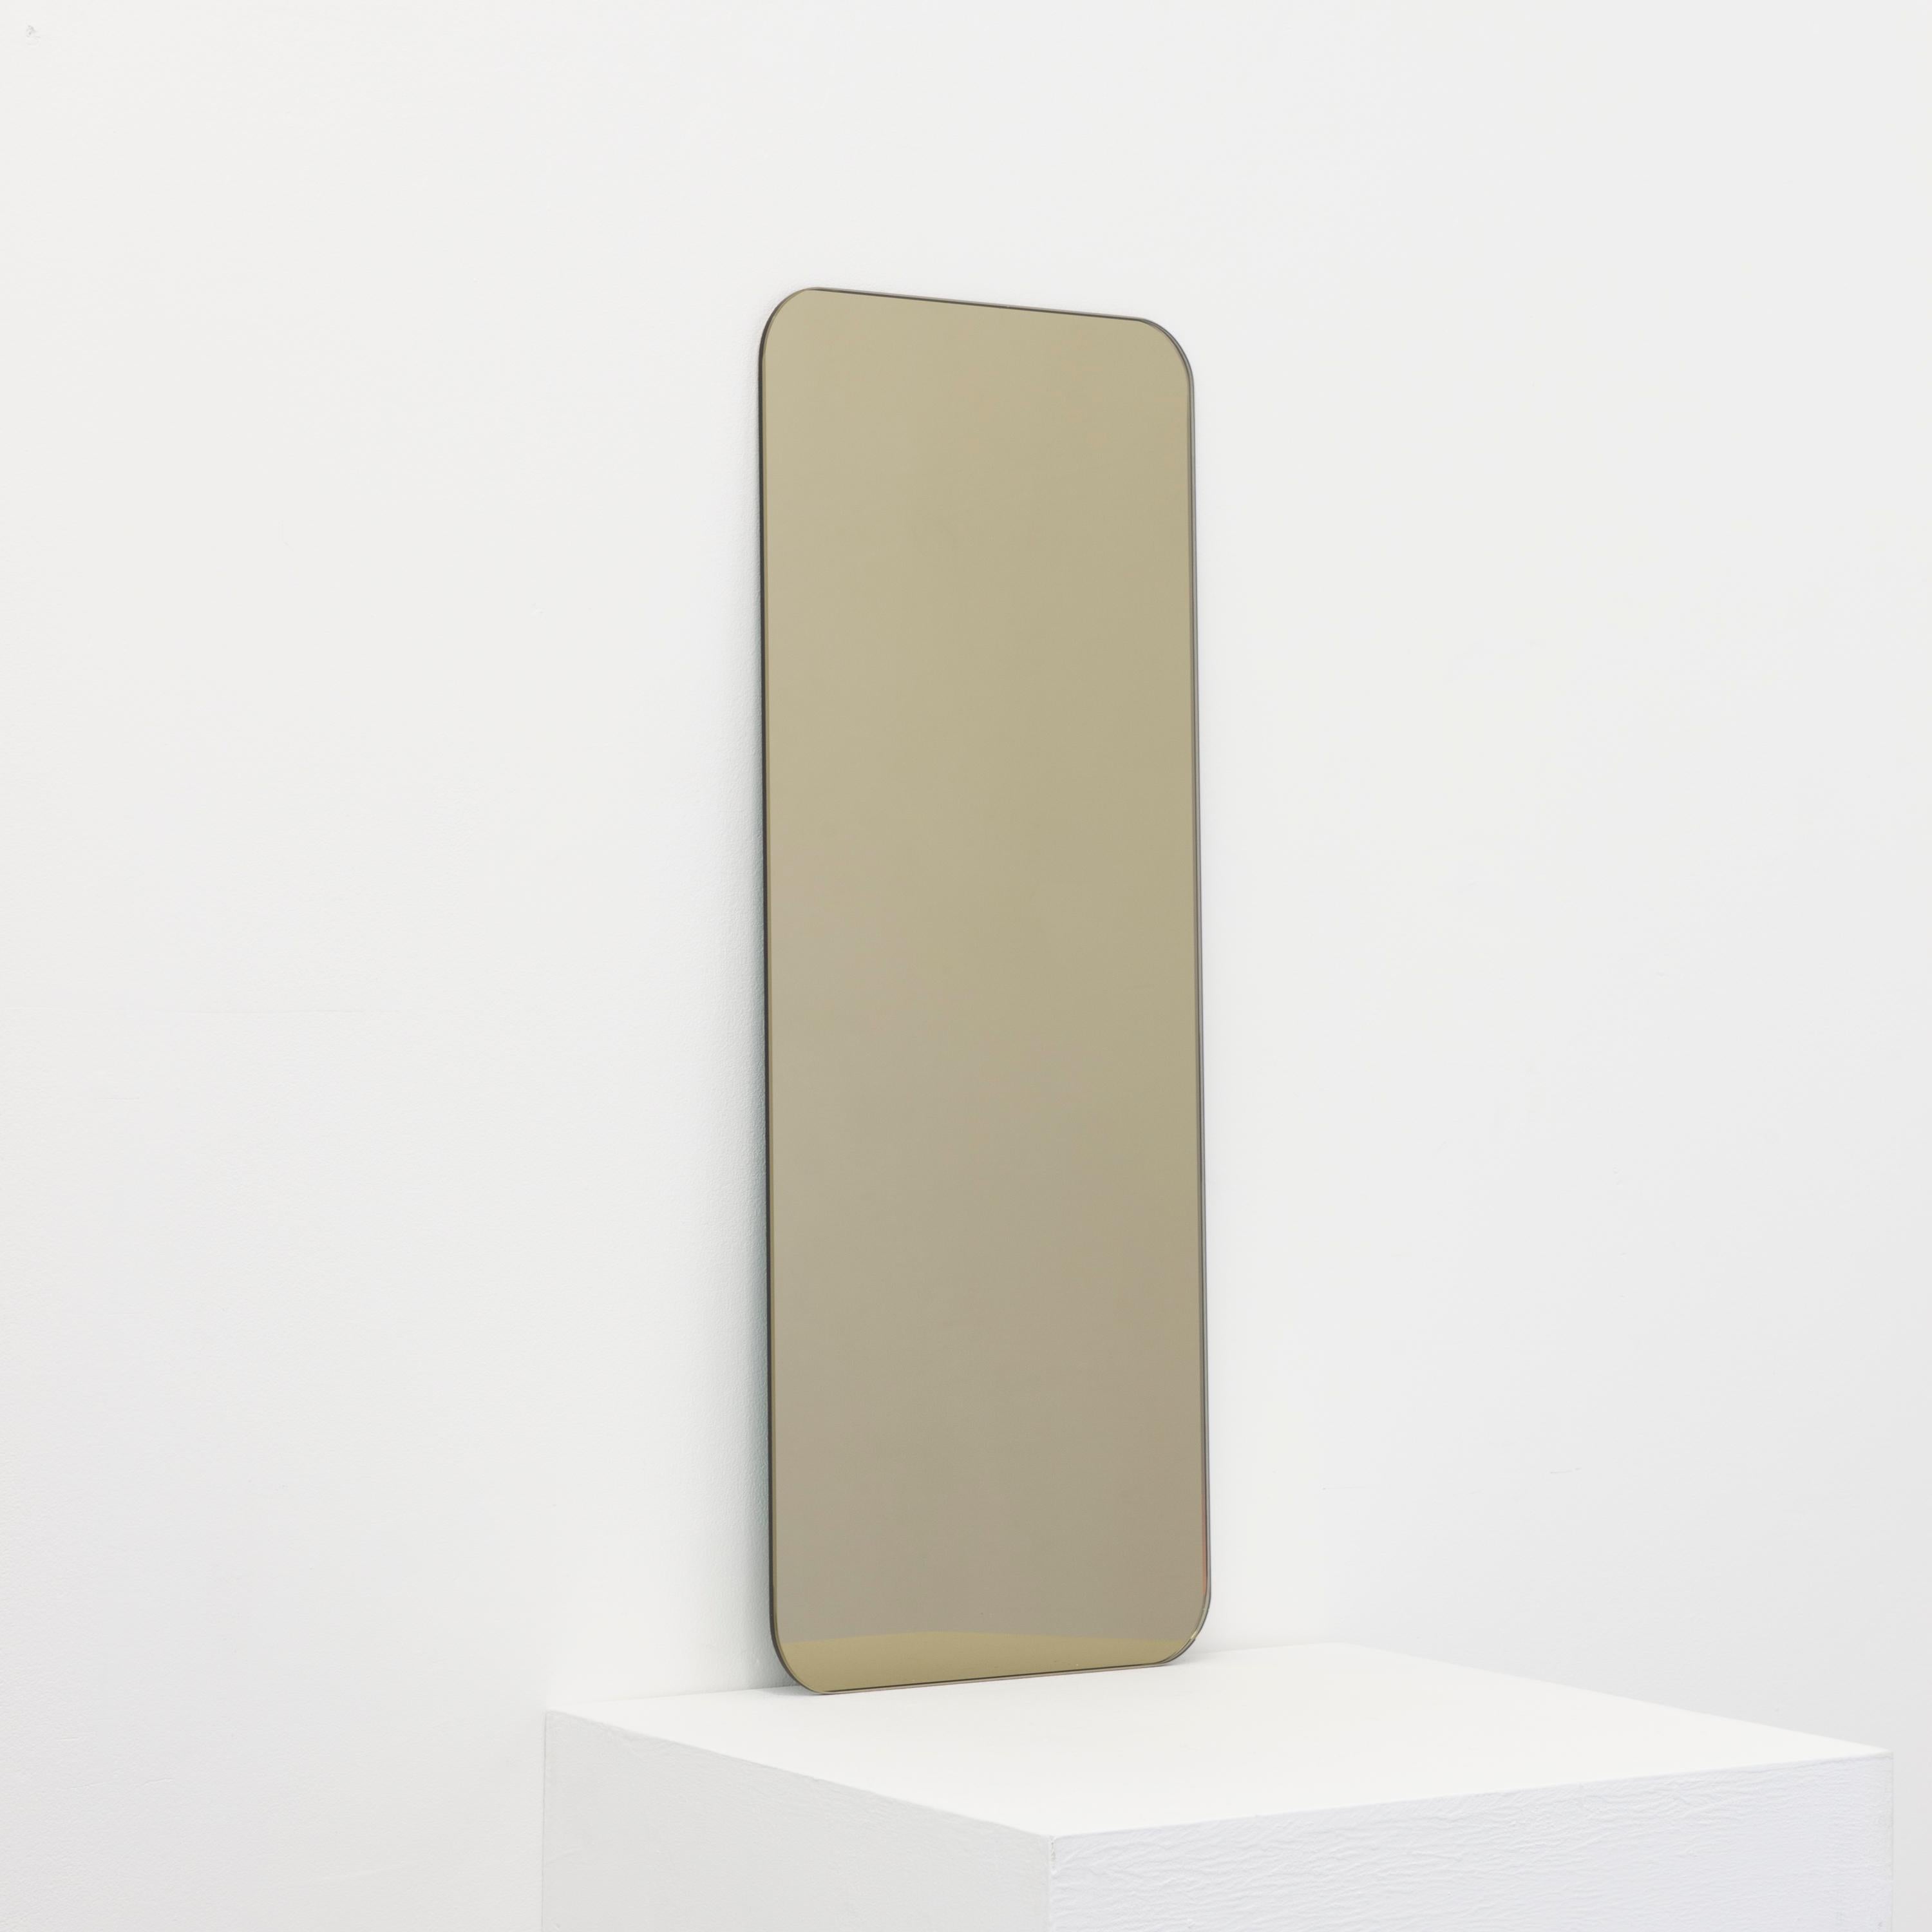 Miroir minimaliste de forme rectangulaire sans cadre, teinté en bronze, avec un effet flottant. Un design de qualité qui garantit que le miroir est parfaitement parallèle au mur. Conçu et fabriqué à Londres, au Royaume-Uni.

Equipé de plaques